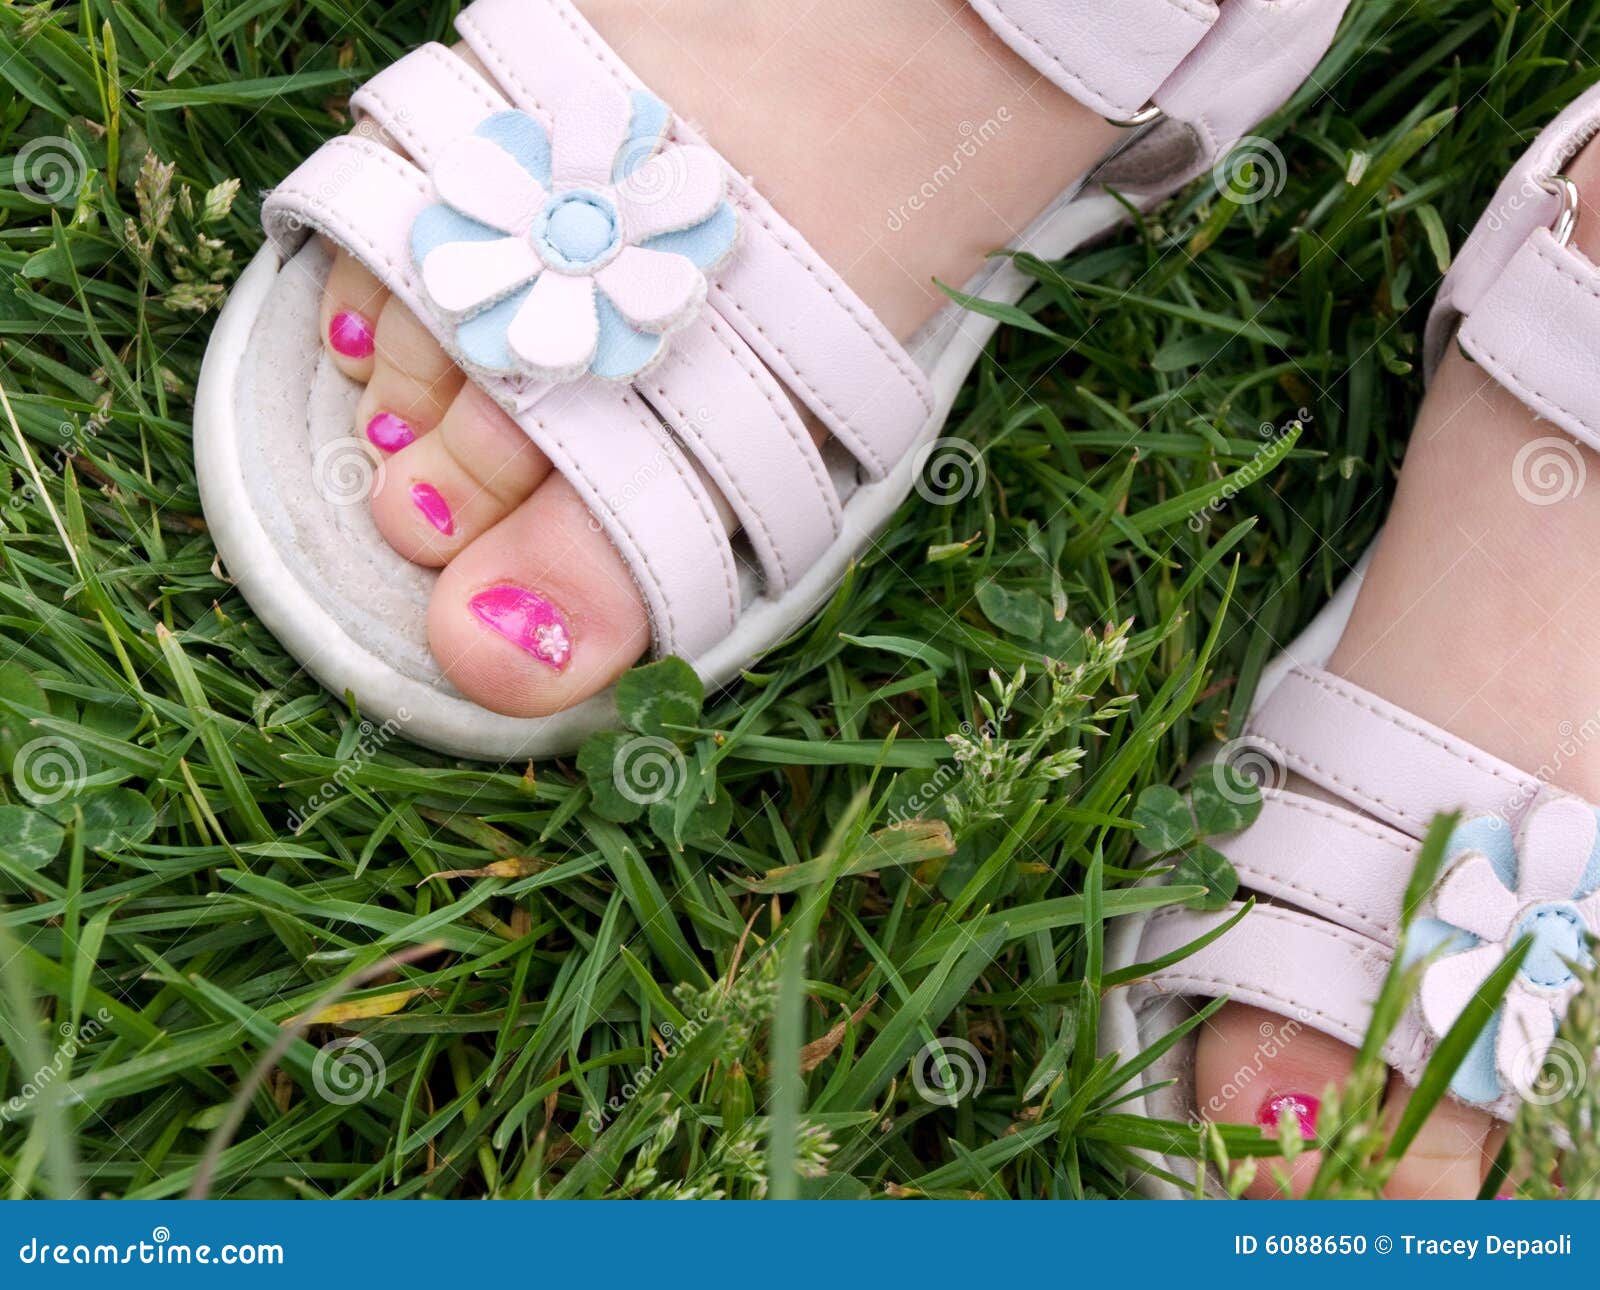 white dress sandals for girls